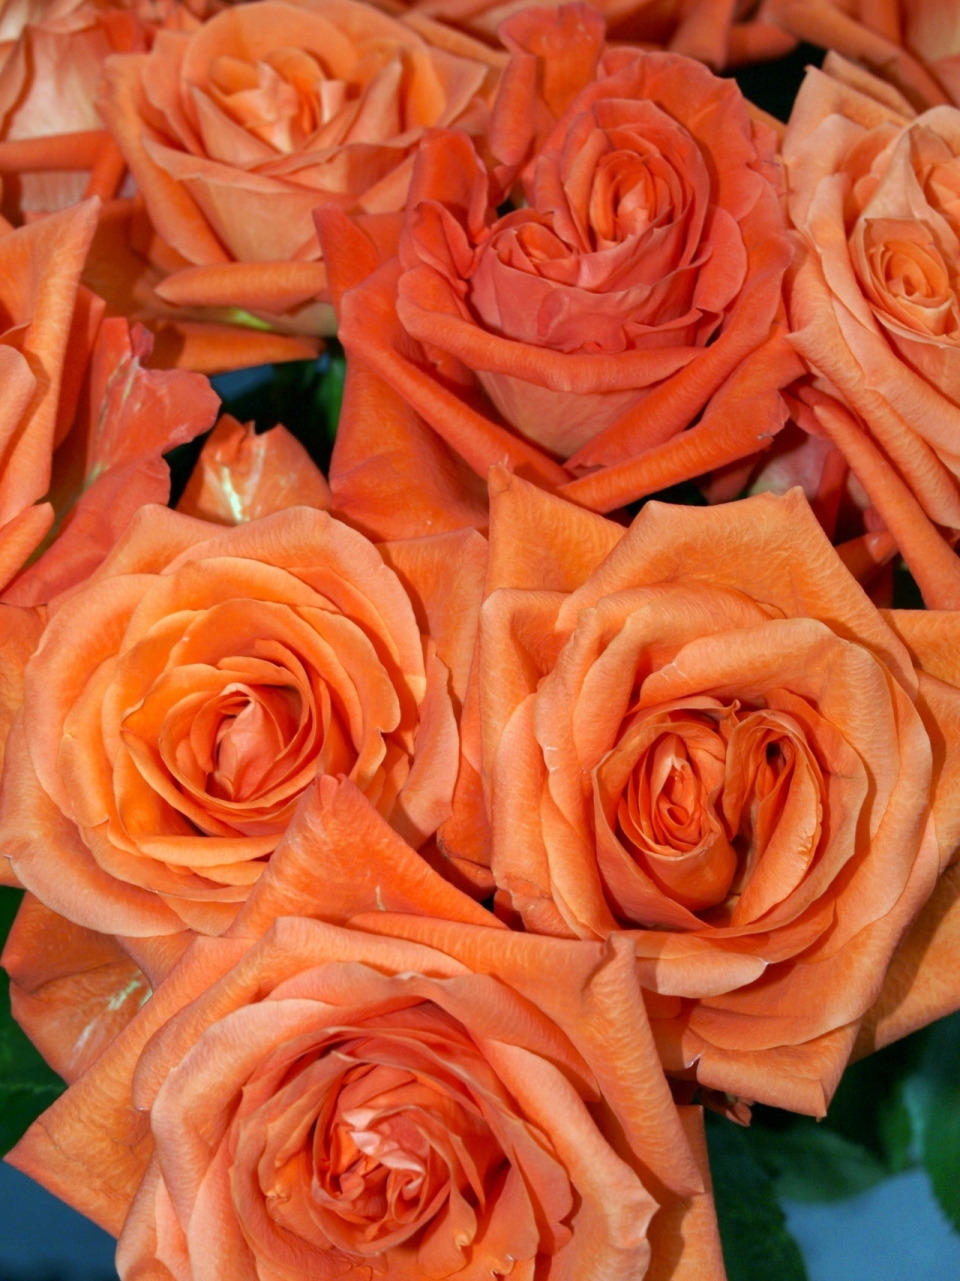 虚化背景浪漫橙色花朵自然玫瑰植物